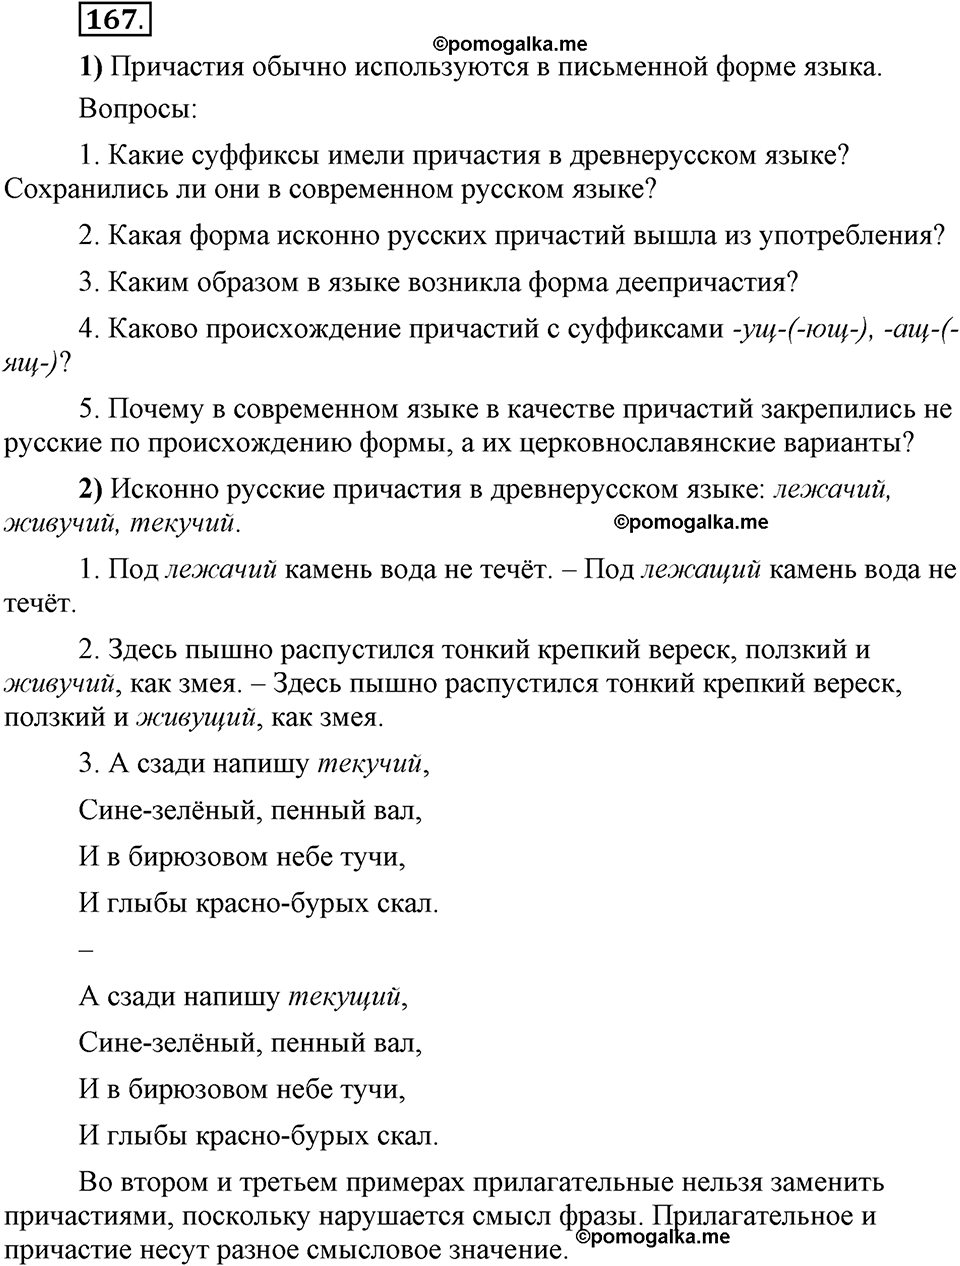 Глава 5. Упражнение №167 русский язык 6 класс Шмелёв